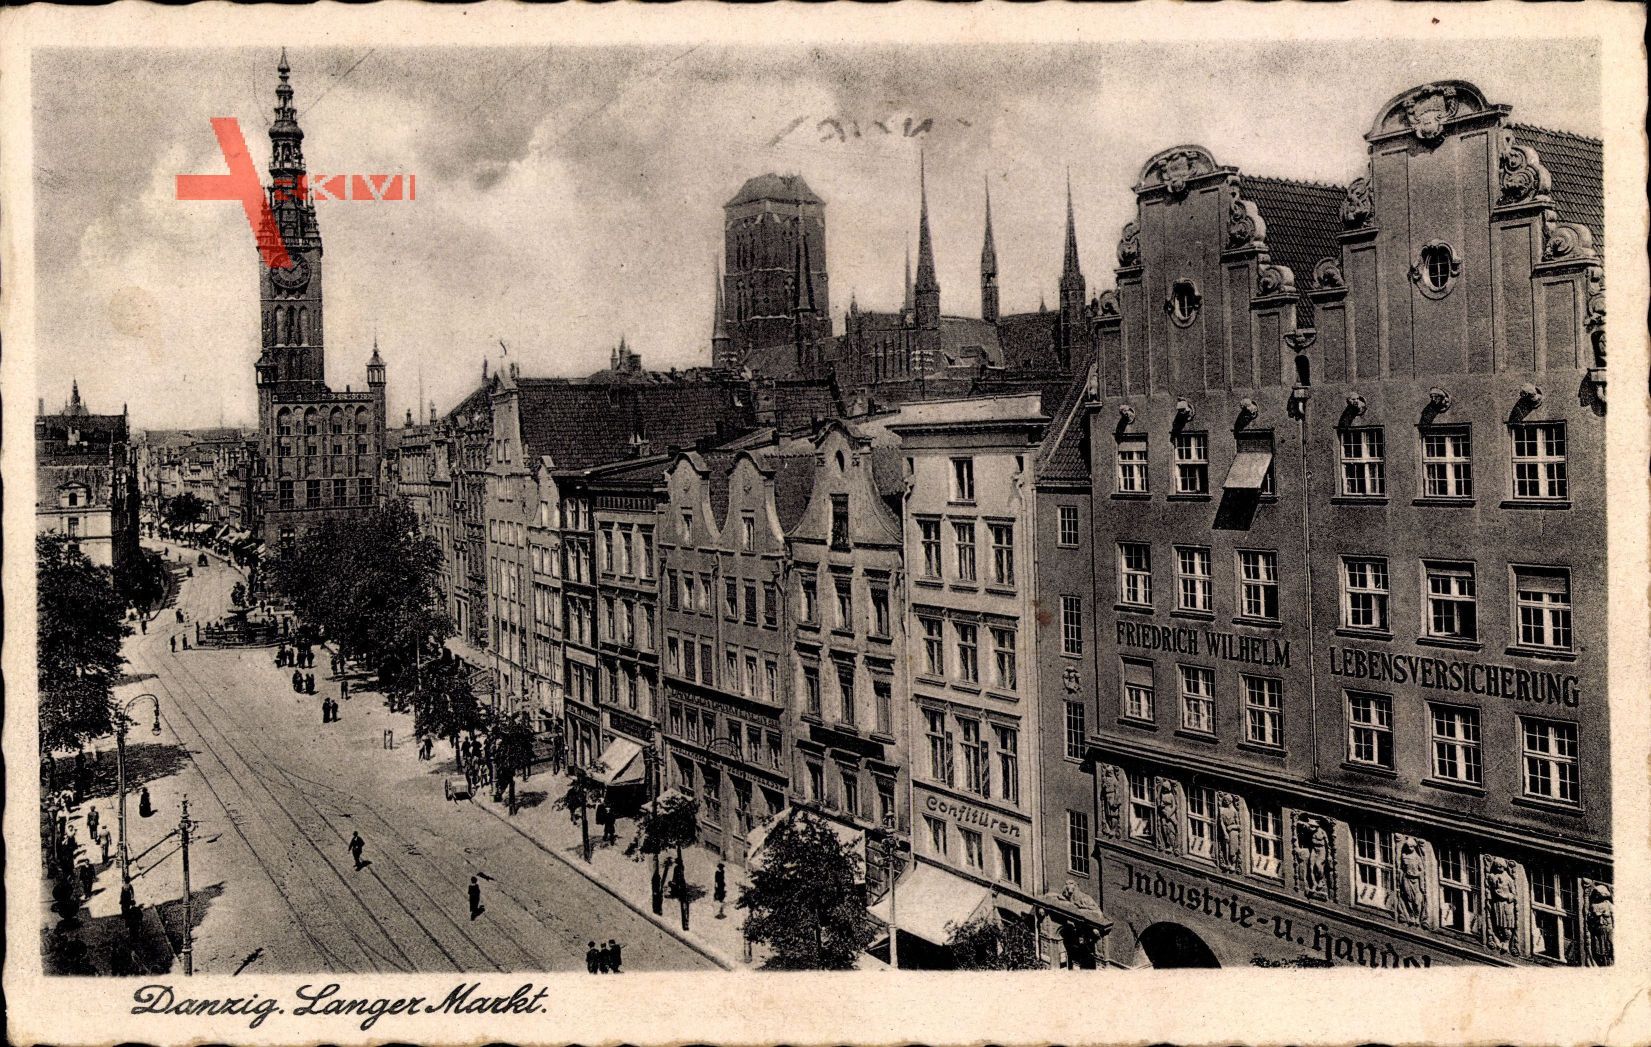 Gdańsk Danzig, Langer Markt, Lebensversicherung Friedrich Wilhelm